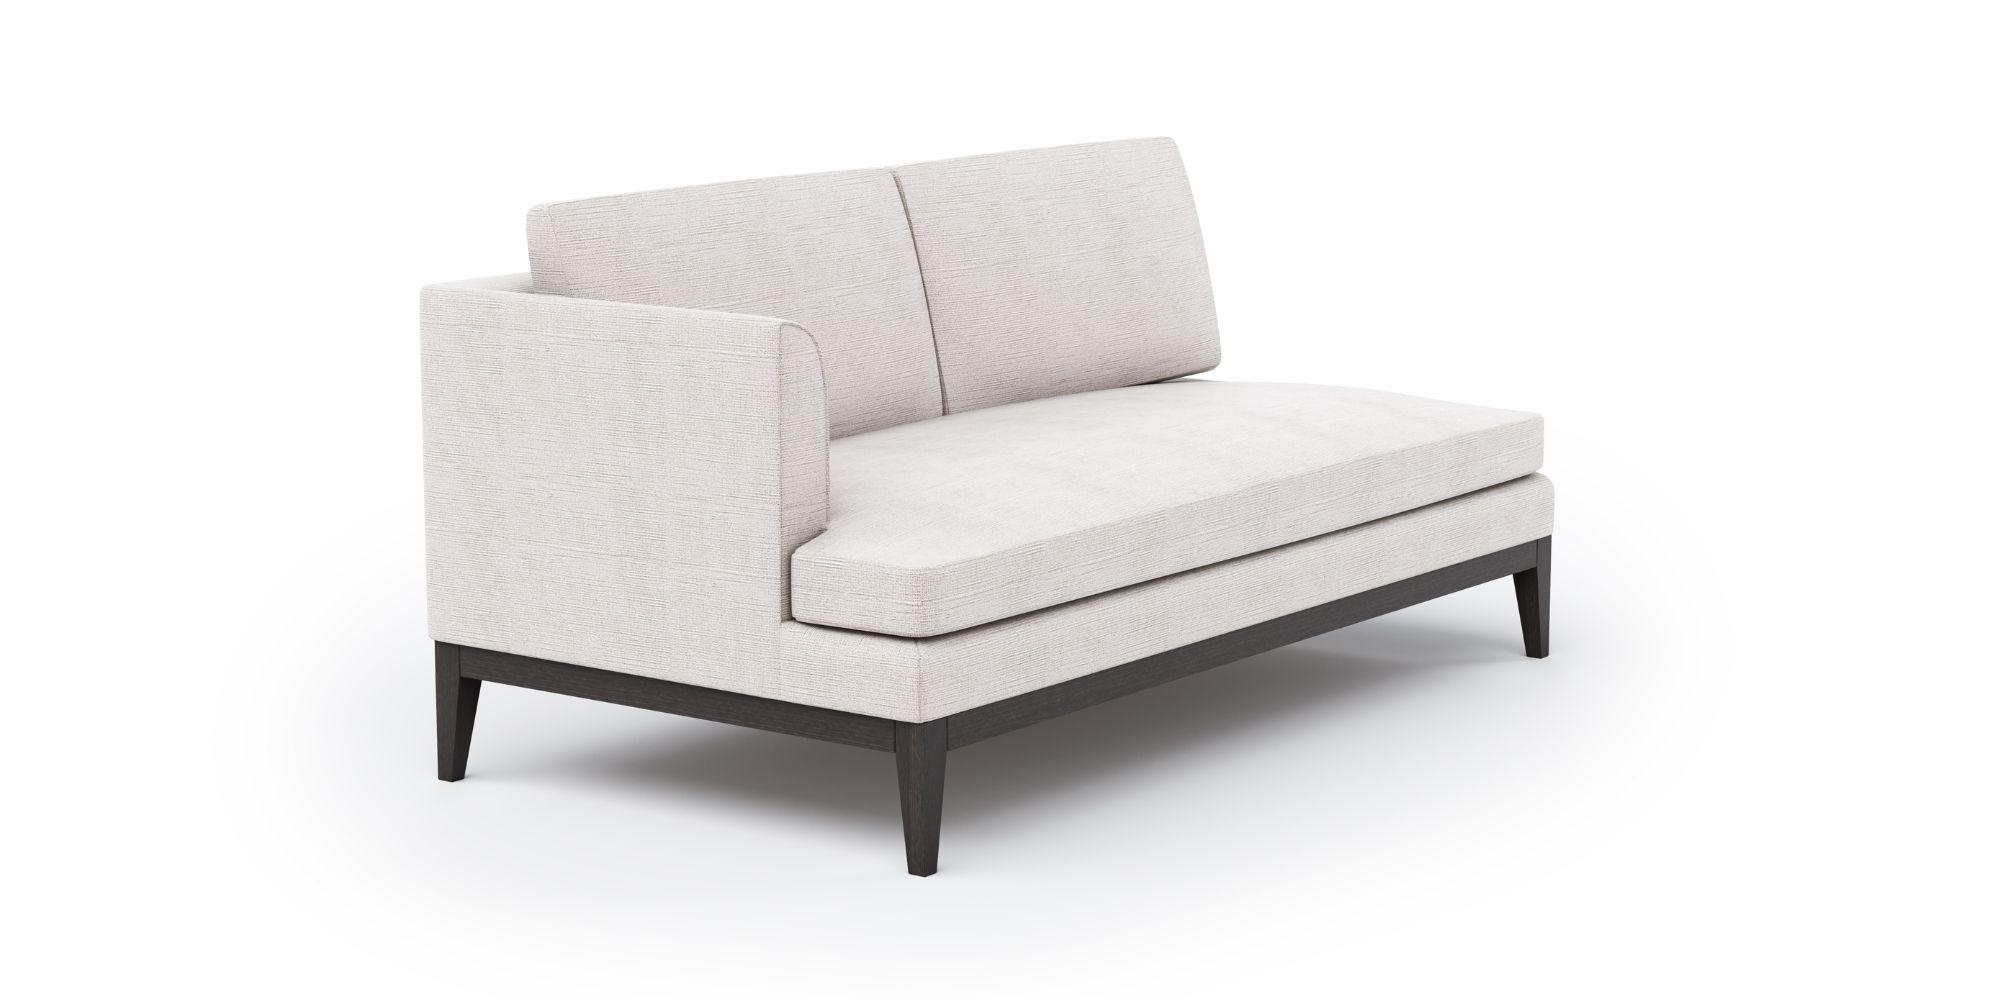 Azur Modular Sofa in Outdoor Modular Sofas for Azur collection